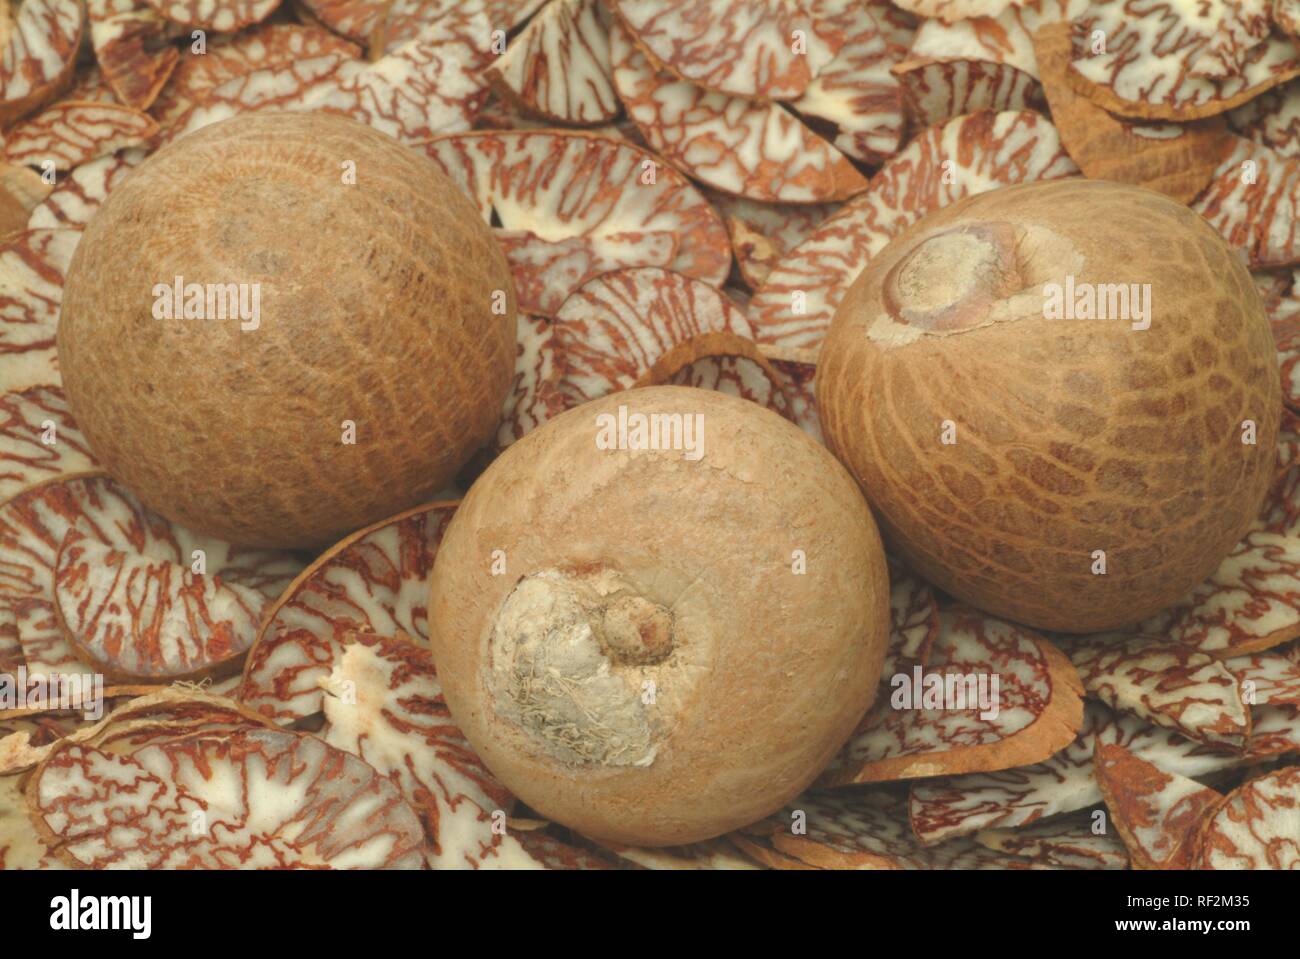 Tranchés et ensemble de noix de bétel, des noix de bétel (Areca catechu palmier), plante médicinale Banque D'Images